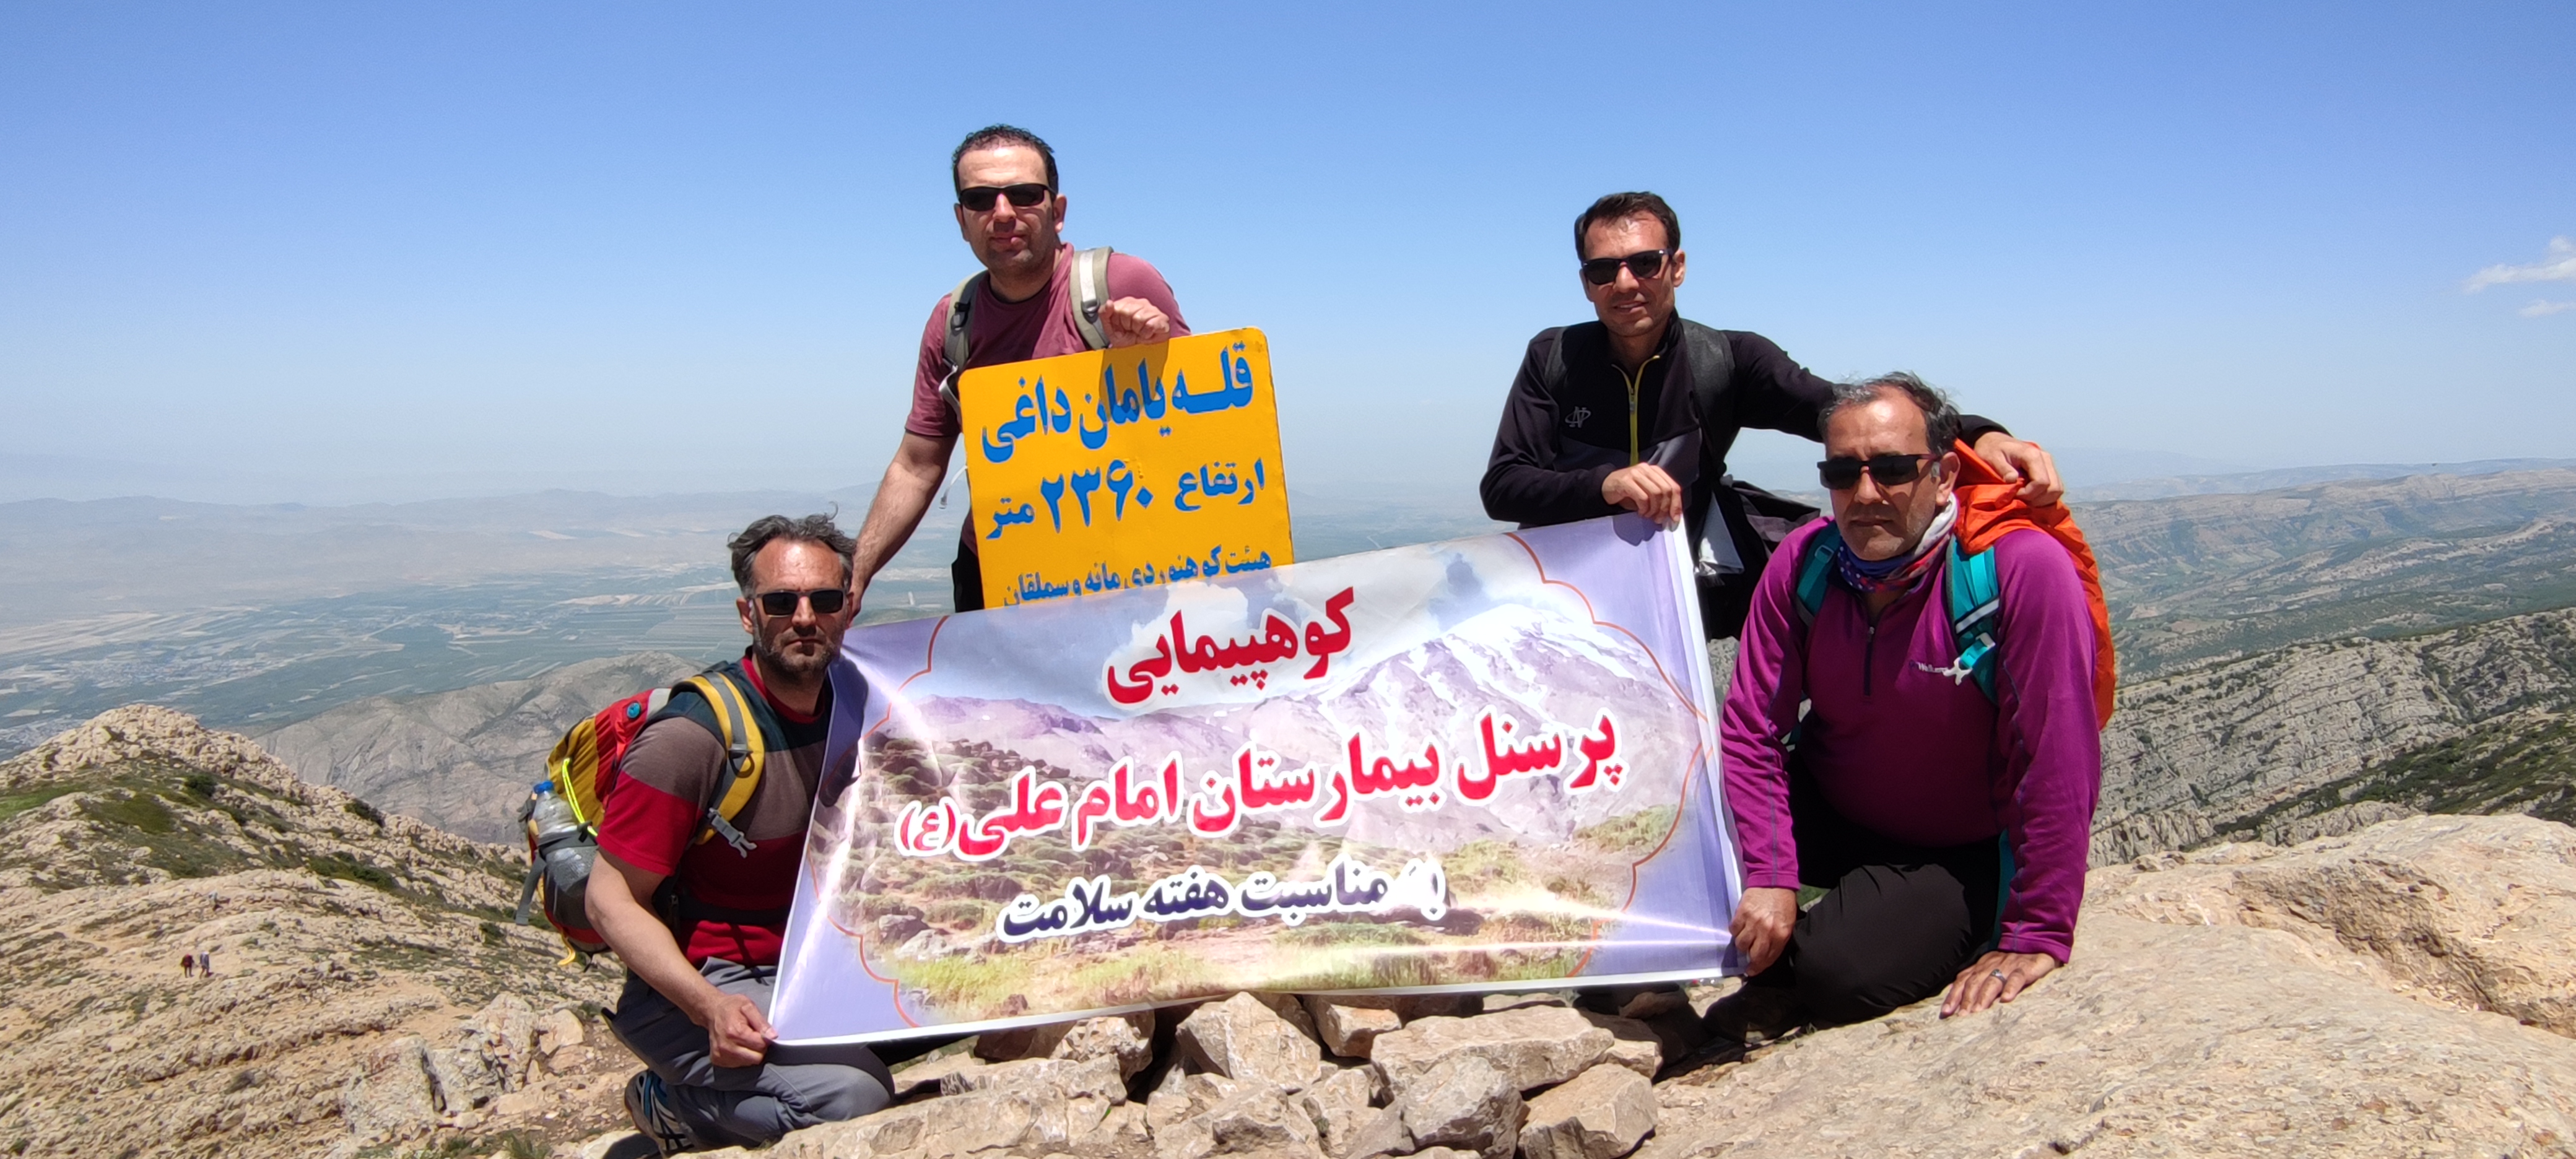 کوهپیمایی پرسنل بیمارستان امام علی(ع) به مناسبت هفته سلامت